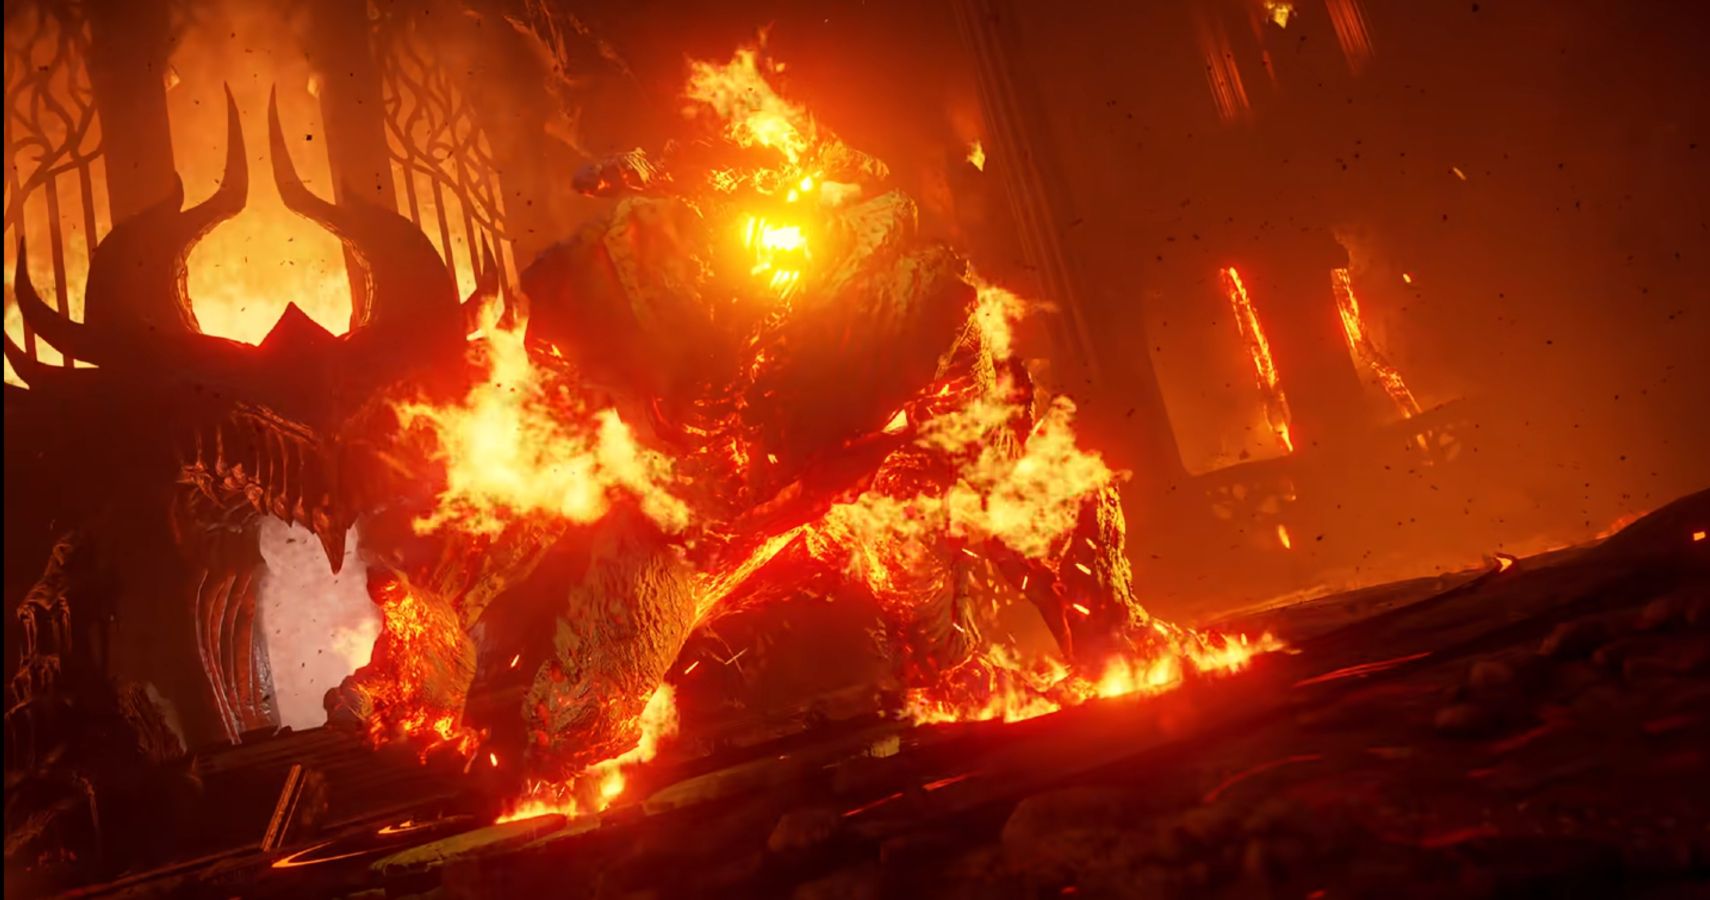 Flamelurker Archstone Walkthrough - Demon's Souls Guide - IGN